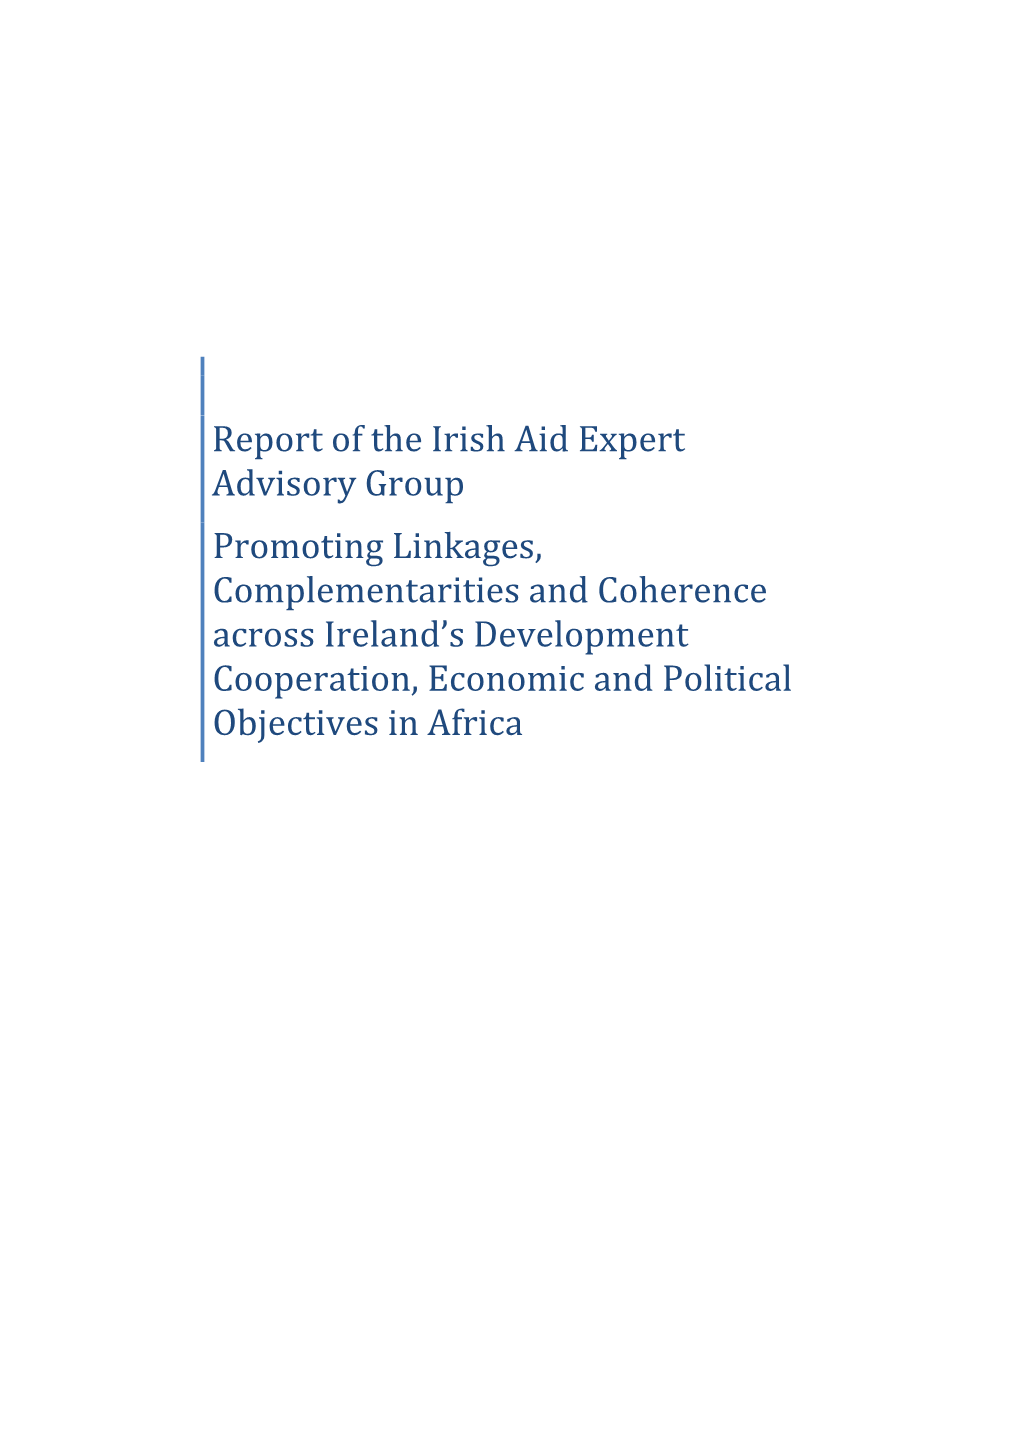 Report of the Irish Aid Expert Advisory Group